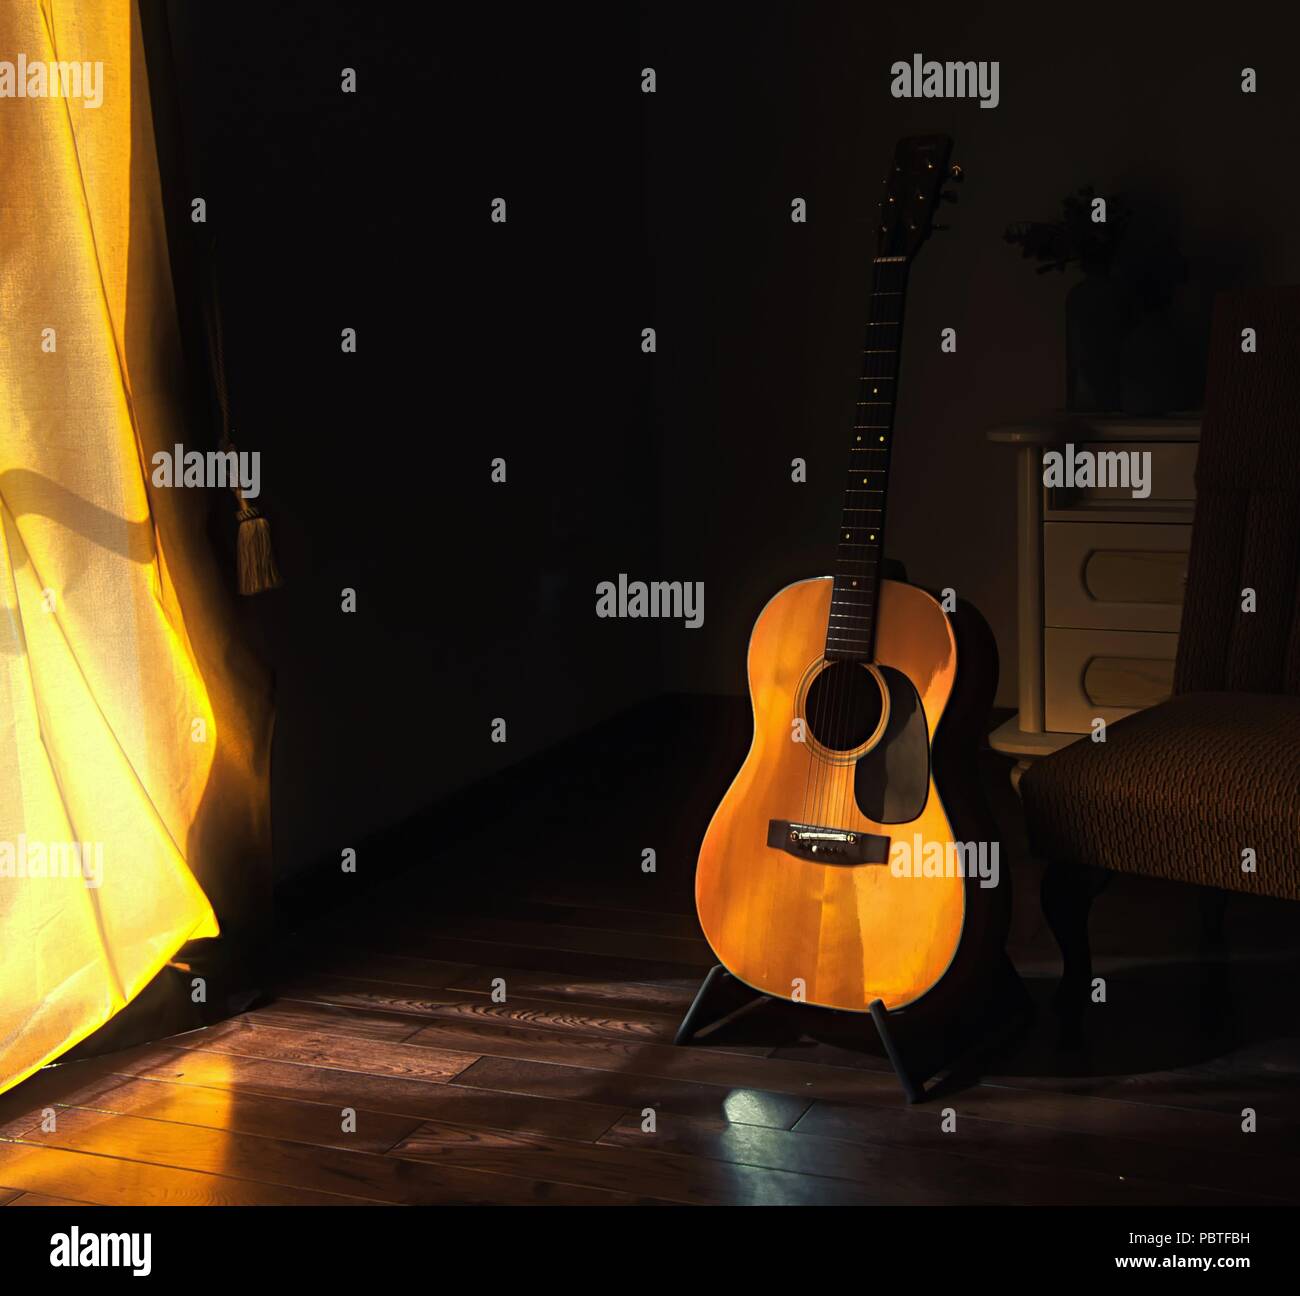 Akustische Gitarre auf einem Ständer in der Moody Schatten eines dunklen Raum mit hellem Licht in den kommenden hinter einem Vorhang Stockfoto